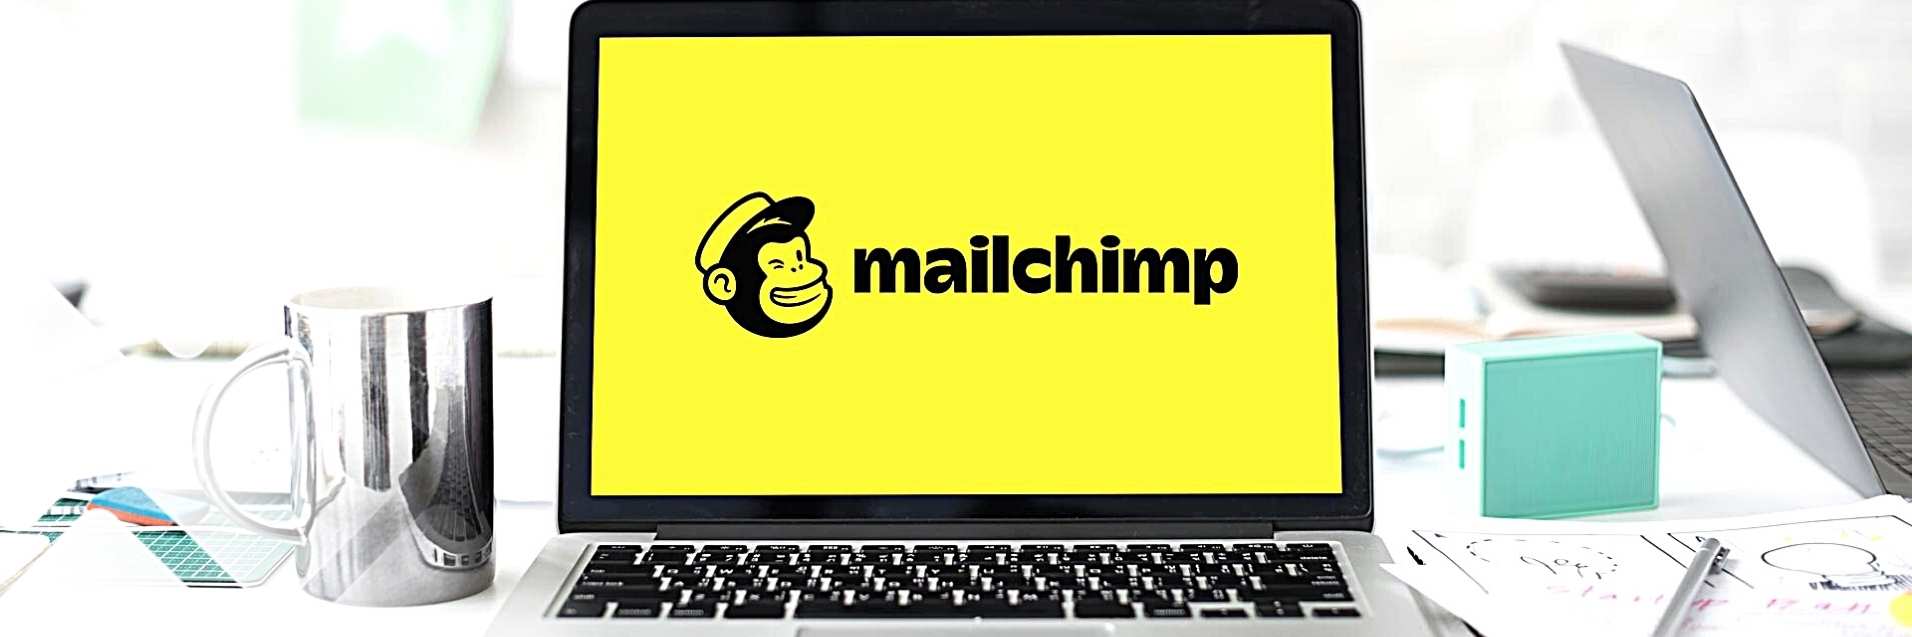 Mailchimp DSGVO am PC